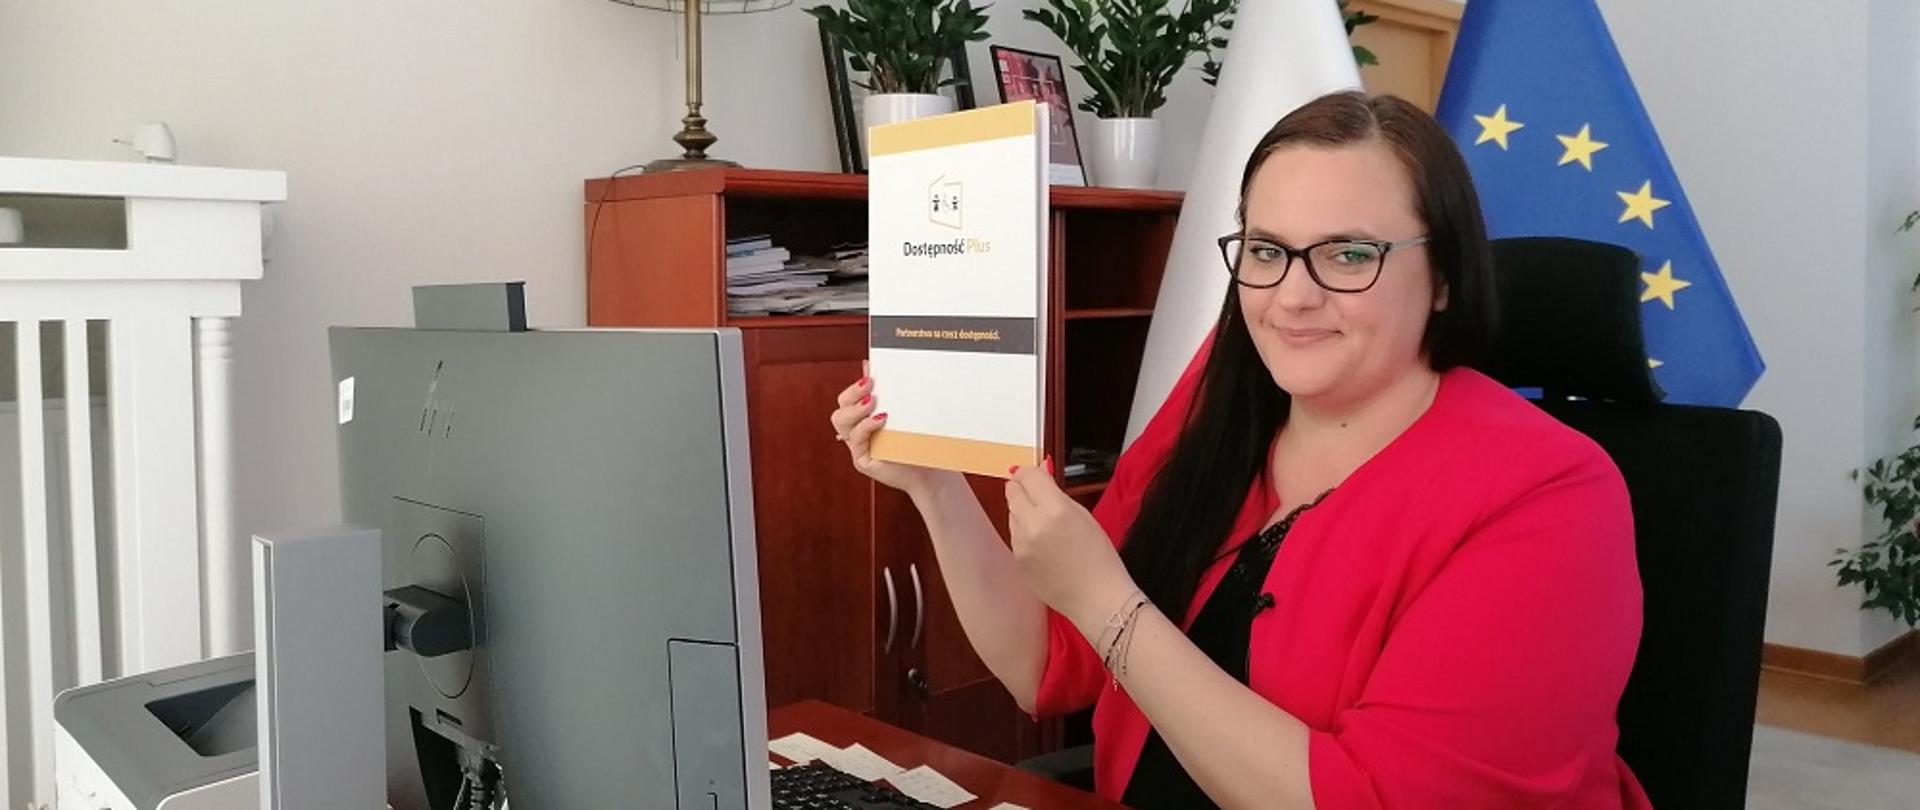 Zdjęcie minister w swoim gabinecie. Małgorzata Jarosińska-Jedynak siedzi uśmiechnięta przed komputerem, w dłoniach trzyma teczkę z napisem Dostępność Plus.